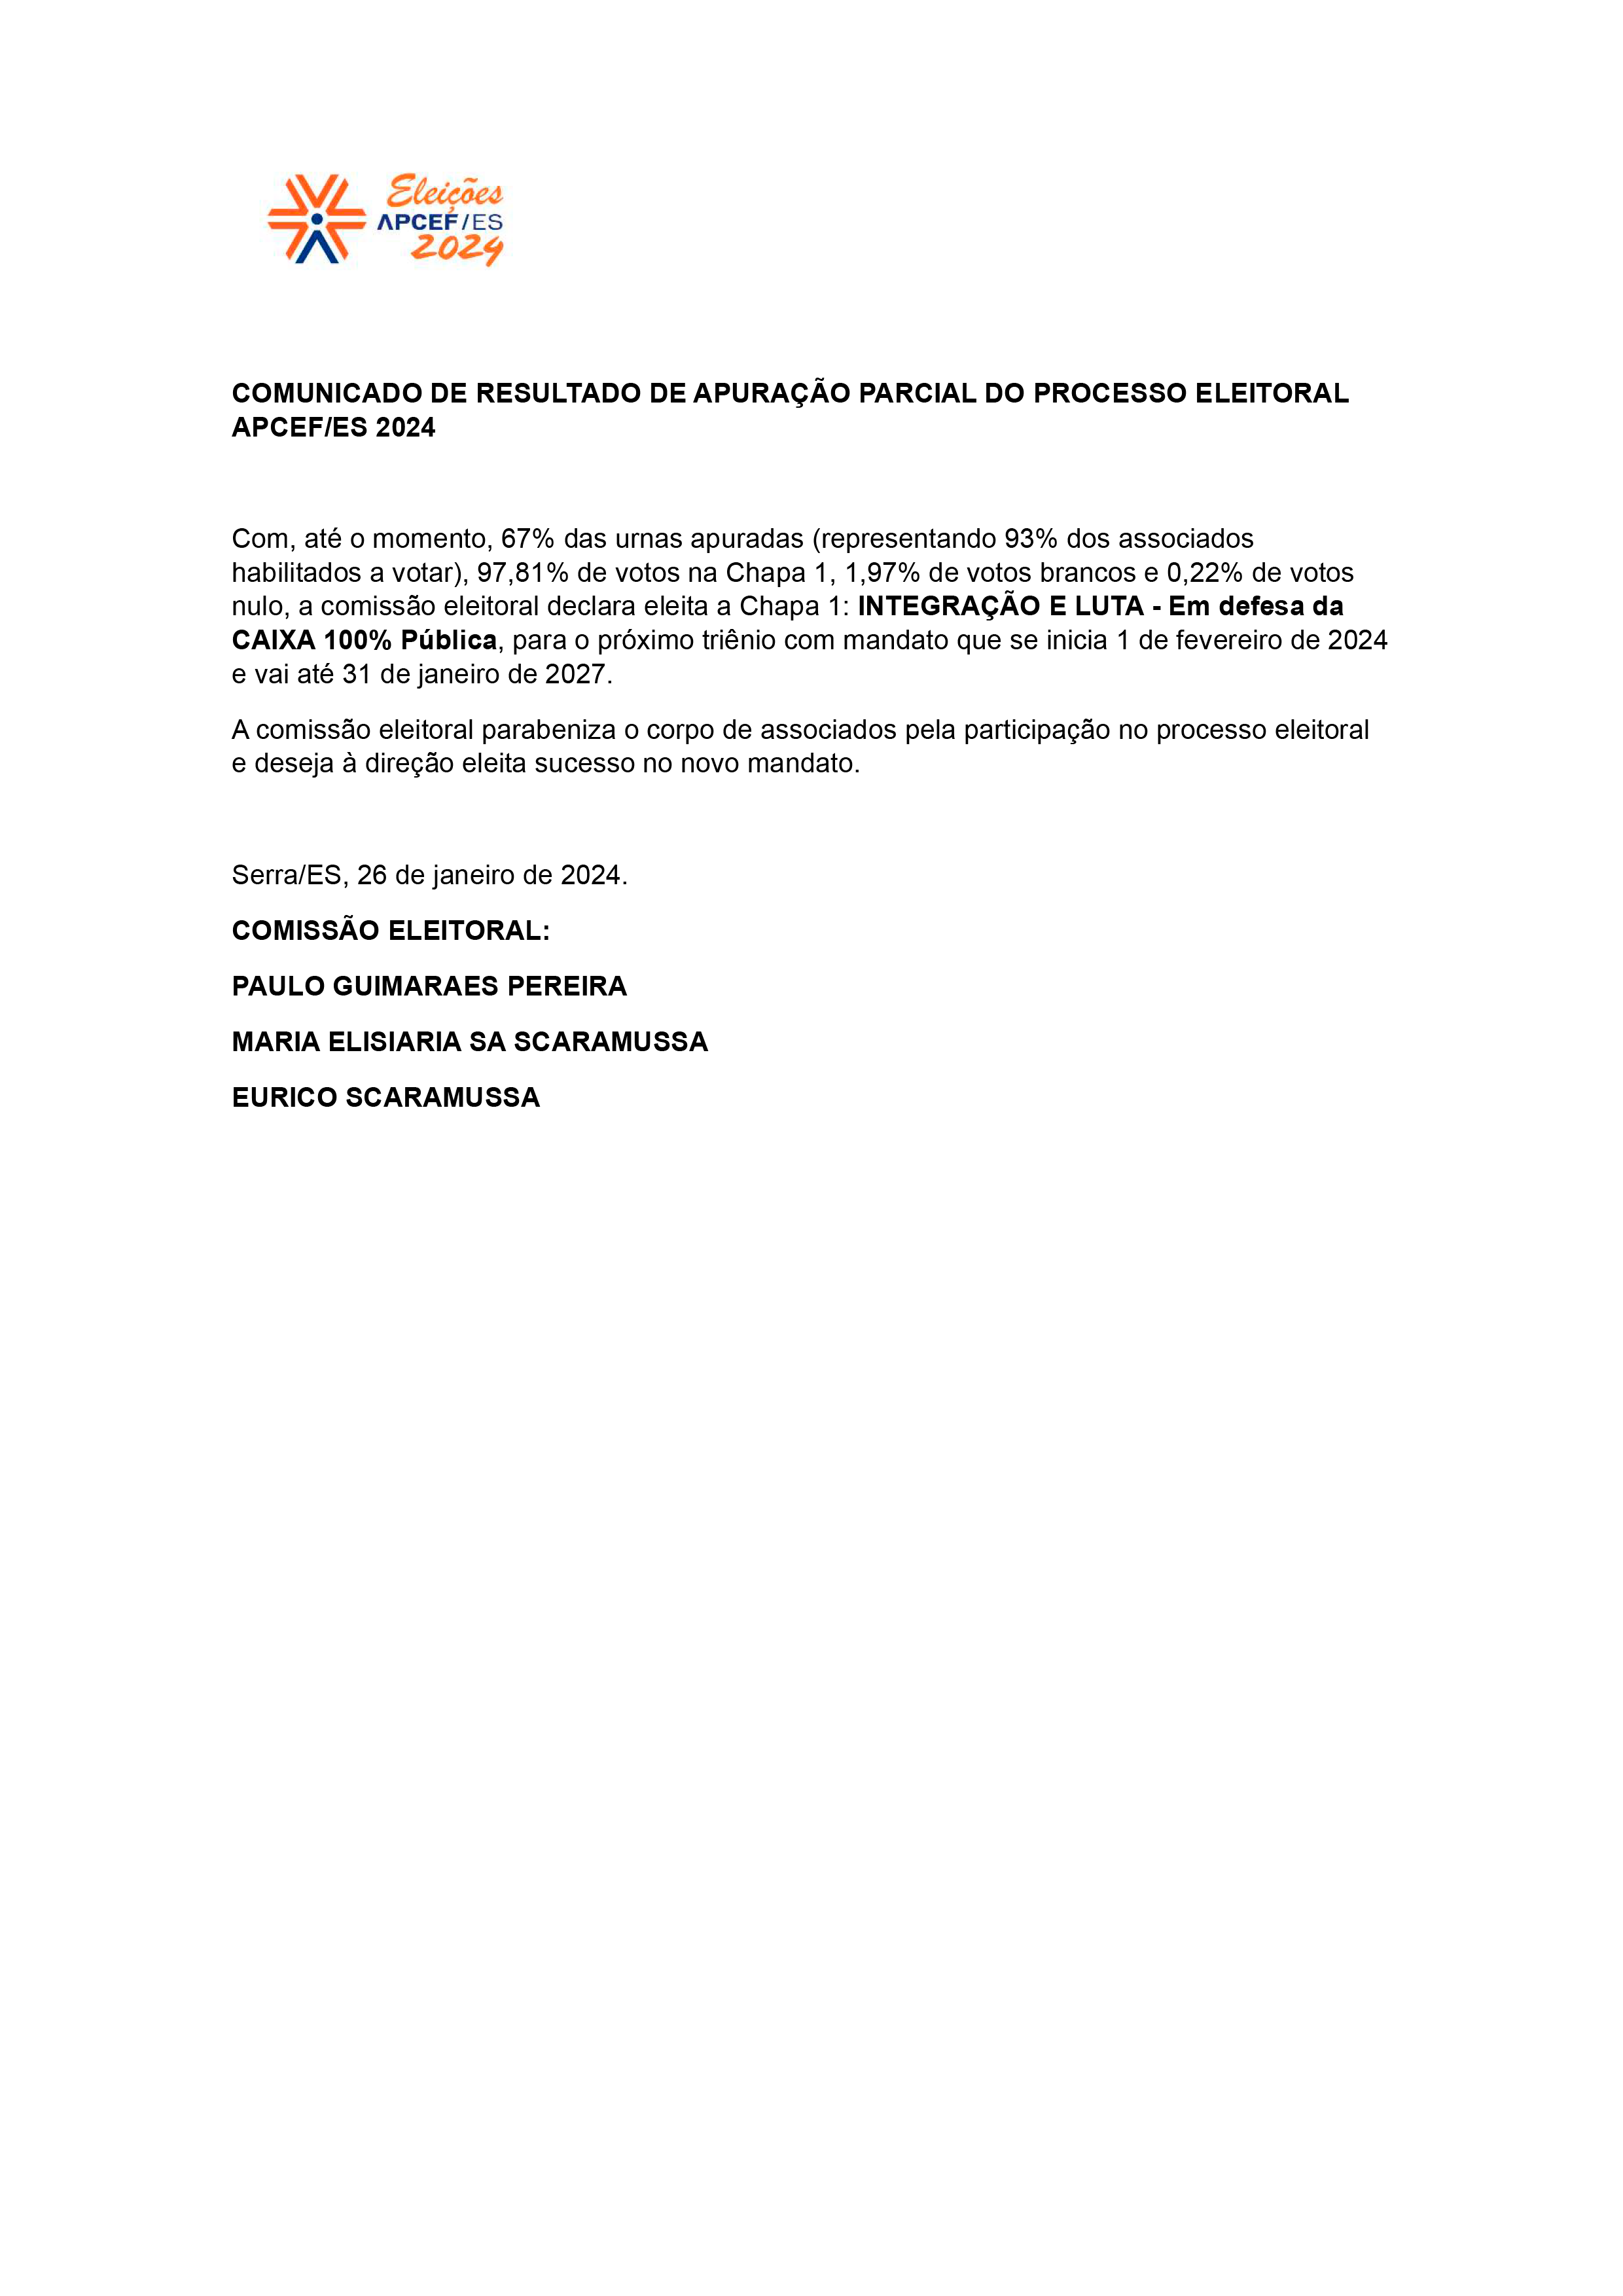 ELEICAO 2024 - COMUNICADO DE RESULTADO DE APURACAO PARCIAL.png